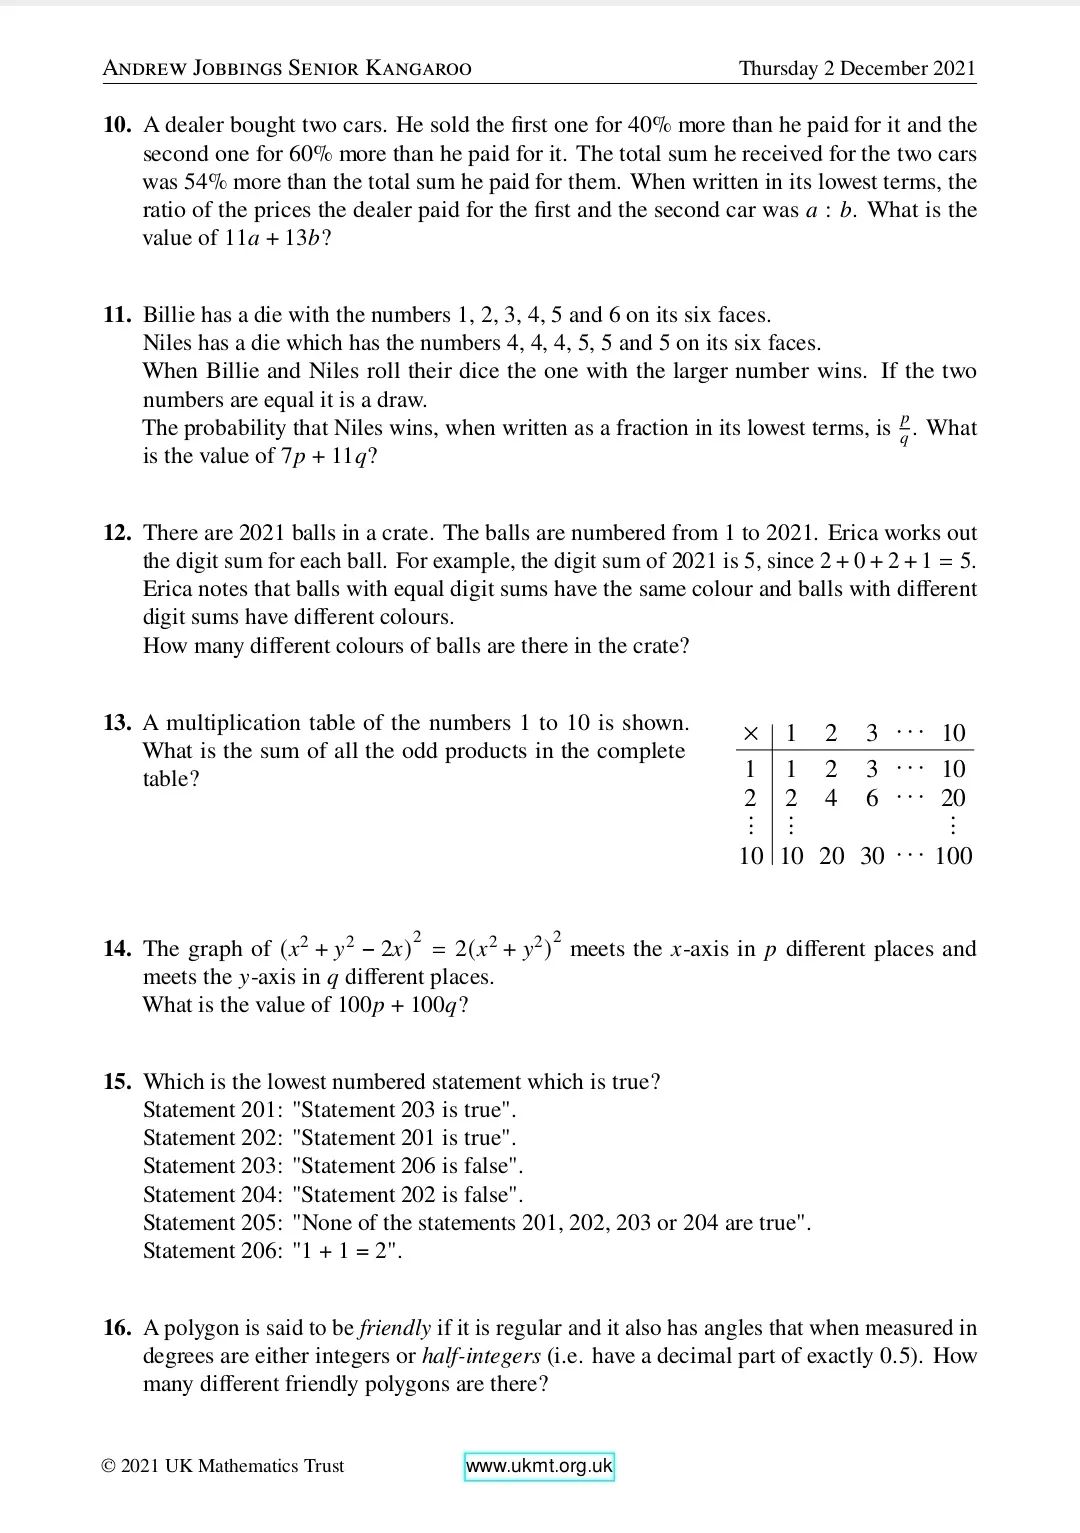 英国高级数学袋鼠竞赛真题及答案出炉